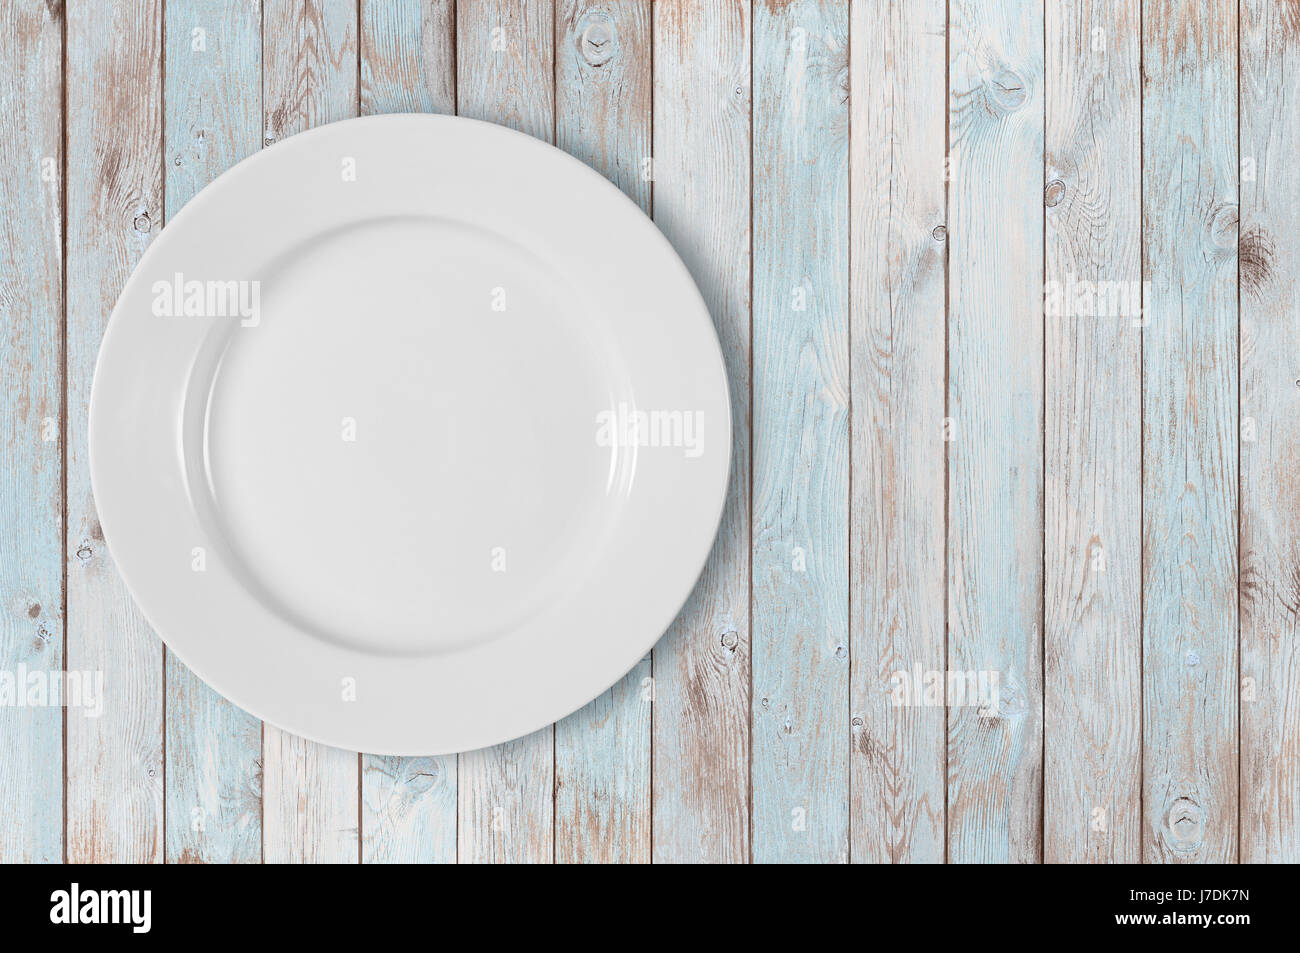 Assiette vide blanc sur le côté gauche du tableau en bois bleu Banque D'Images